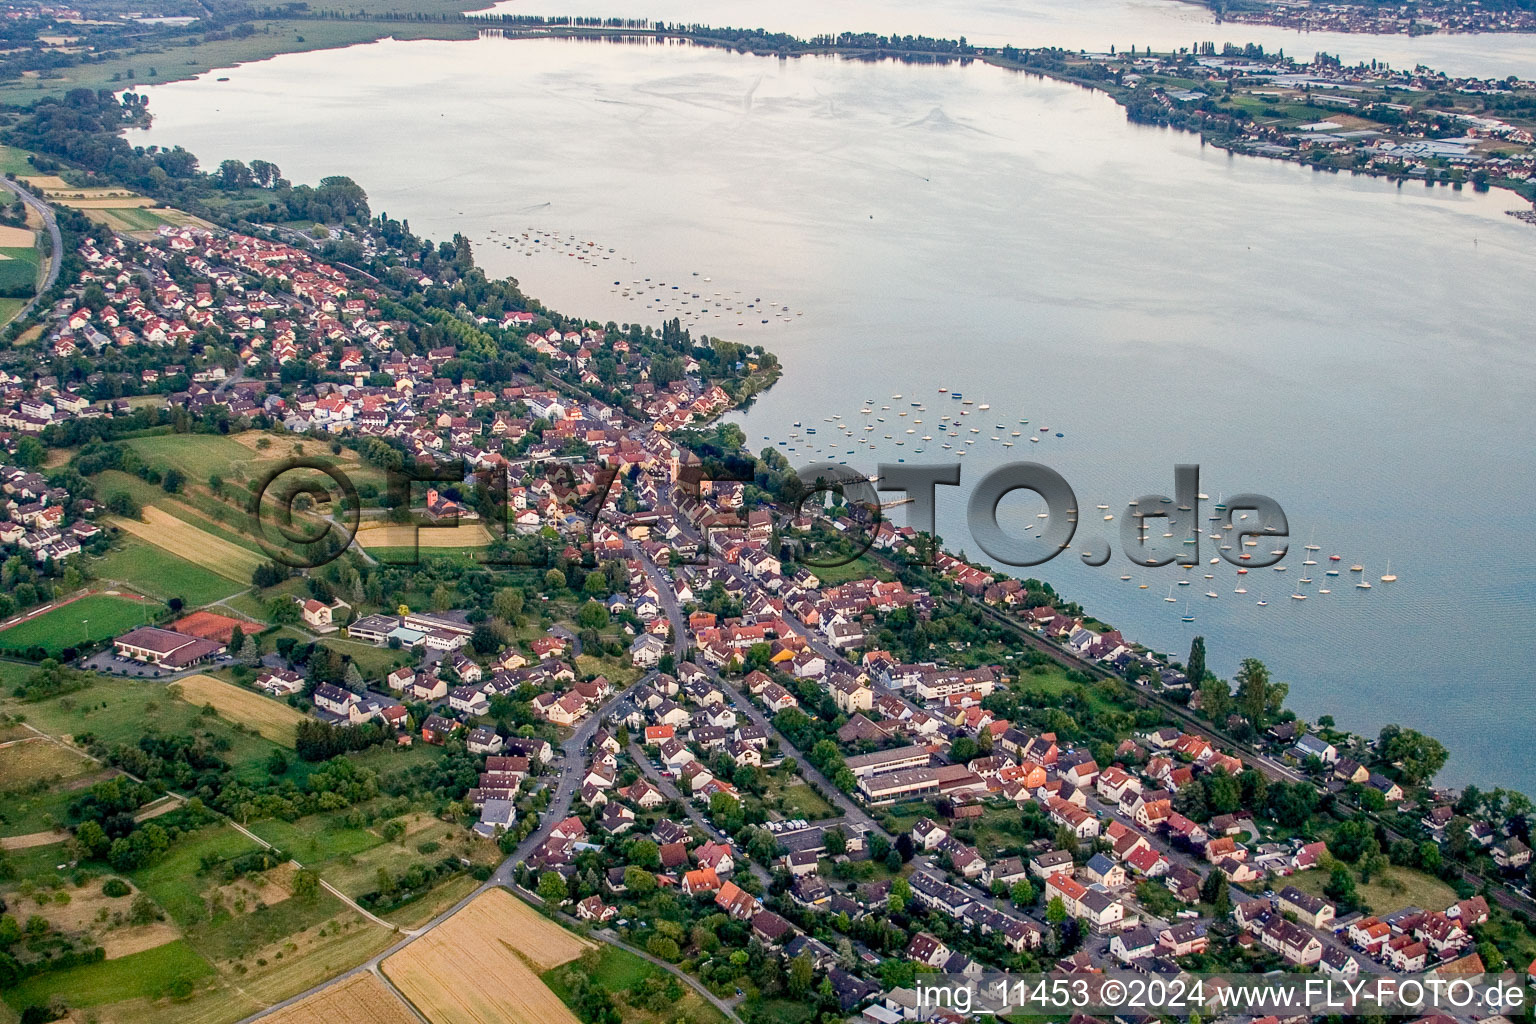 Luftaufnahme von Dorfkern an den See- Uferbereichen des Untersee/Bodensee in Allensbach im Bundesland Baden-Württemberg, Deutschland